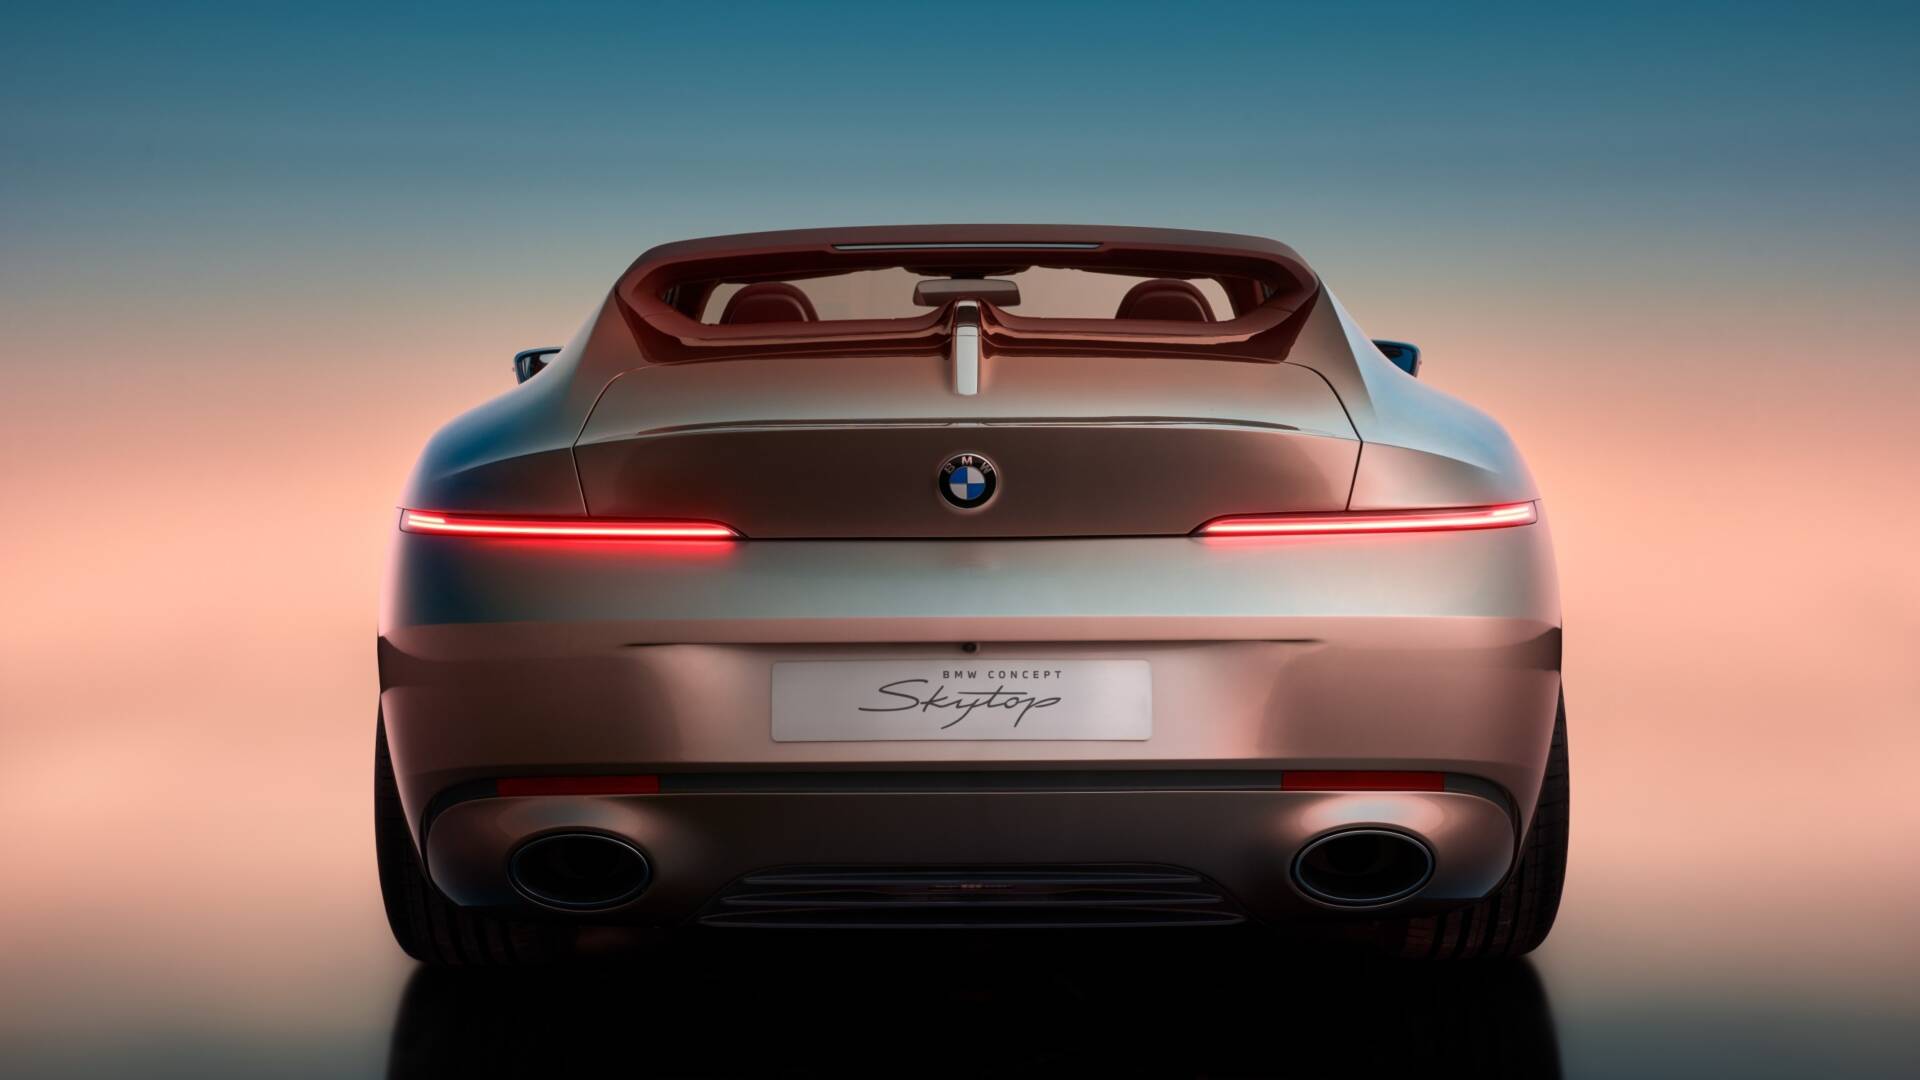 El BMW Concept Skytop es una interpretación del diseño automovilístico intemporal y elegante, inspirado en dos icónicos BMW Roadsters: el BMW 507 y el Z81. V12MAGAZINE